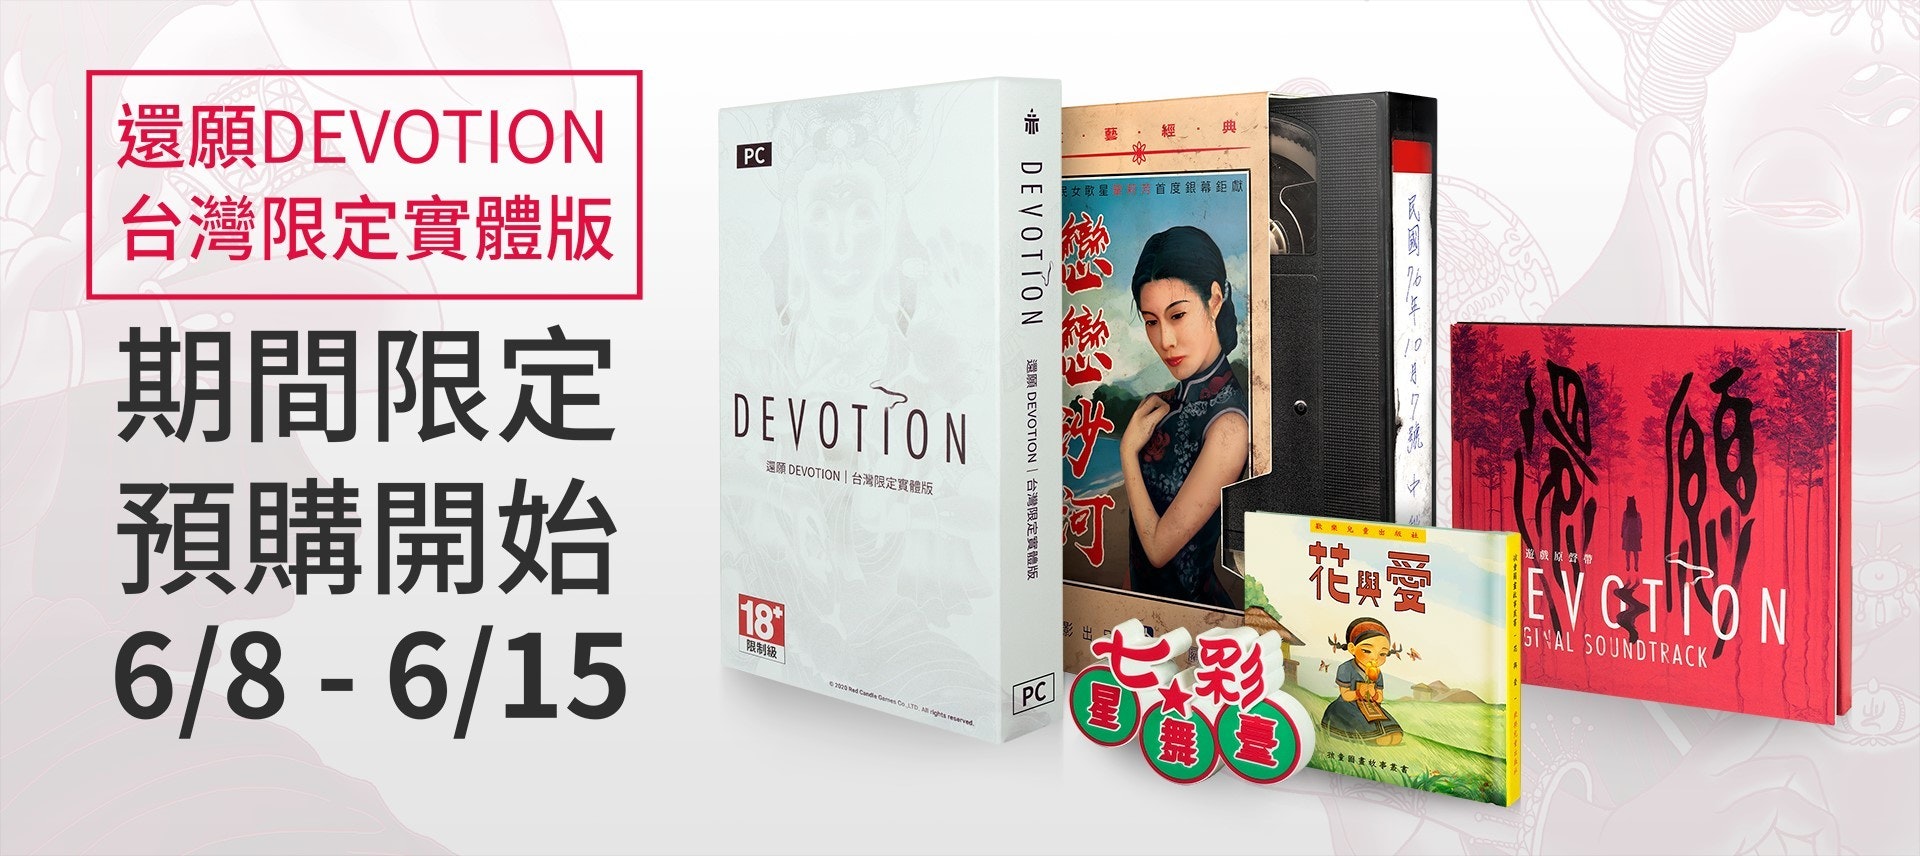 照片中提到了還願DEVOTION、台灣限定實體版、PC，跟奧羅頓有關，包含了雅虎購物中心、平面設計、產品設計、設計、牌